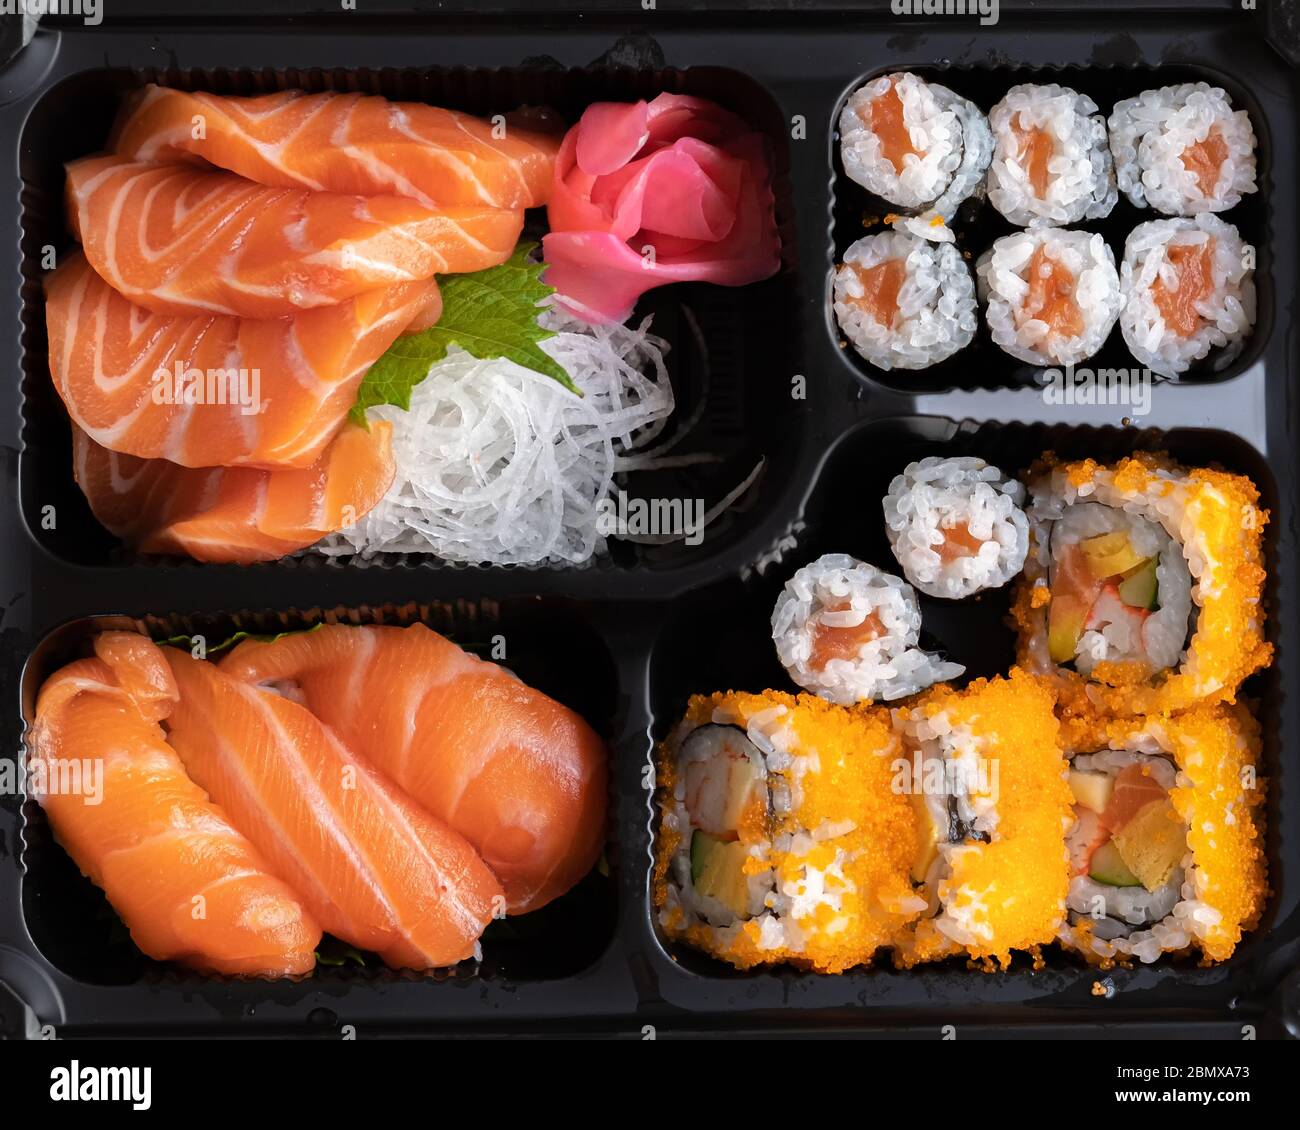 Bento Box Set aus Sushi, Sashimi, California Roll, Maki Sushi Roll.  Japanische Speisen aus rohem Fisch in EINER Einzelportion zum Mitnehmen  oder zum Mitnehmen nach Hause Stockfotografie - Alamy